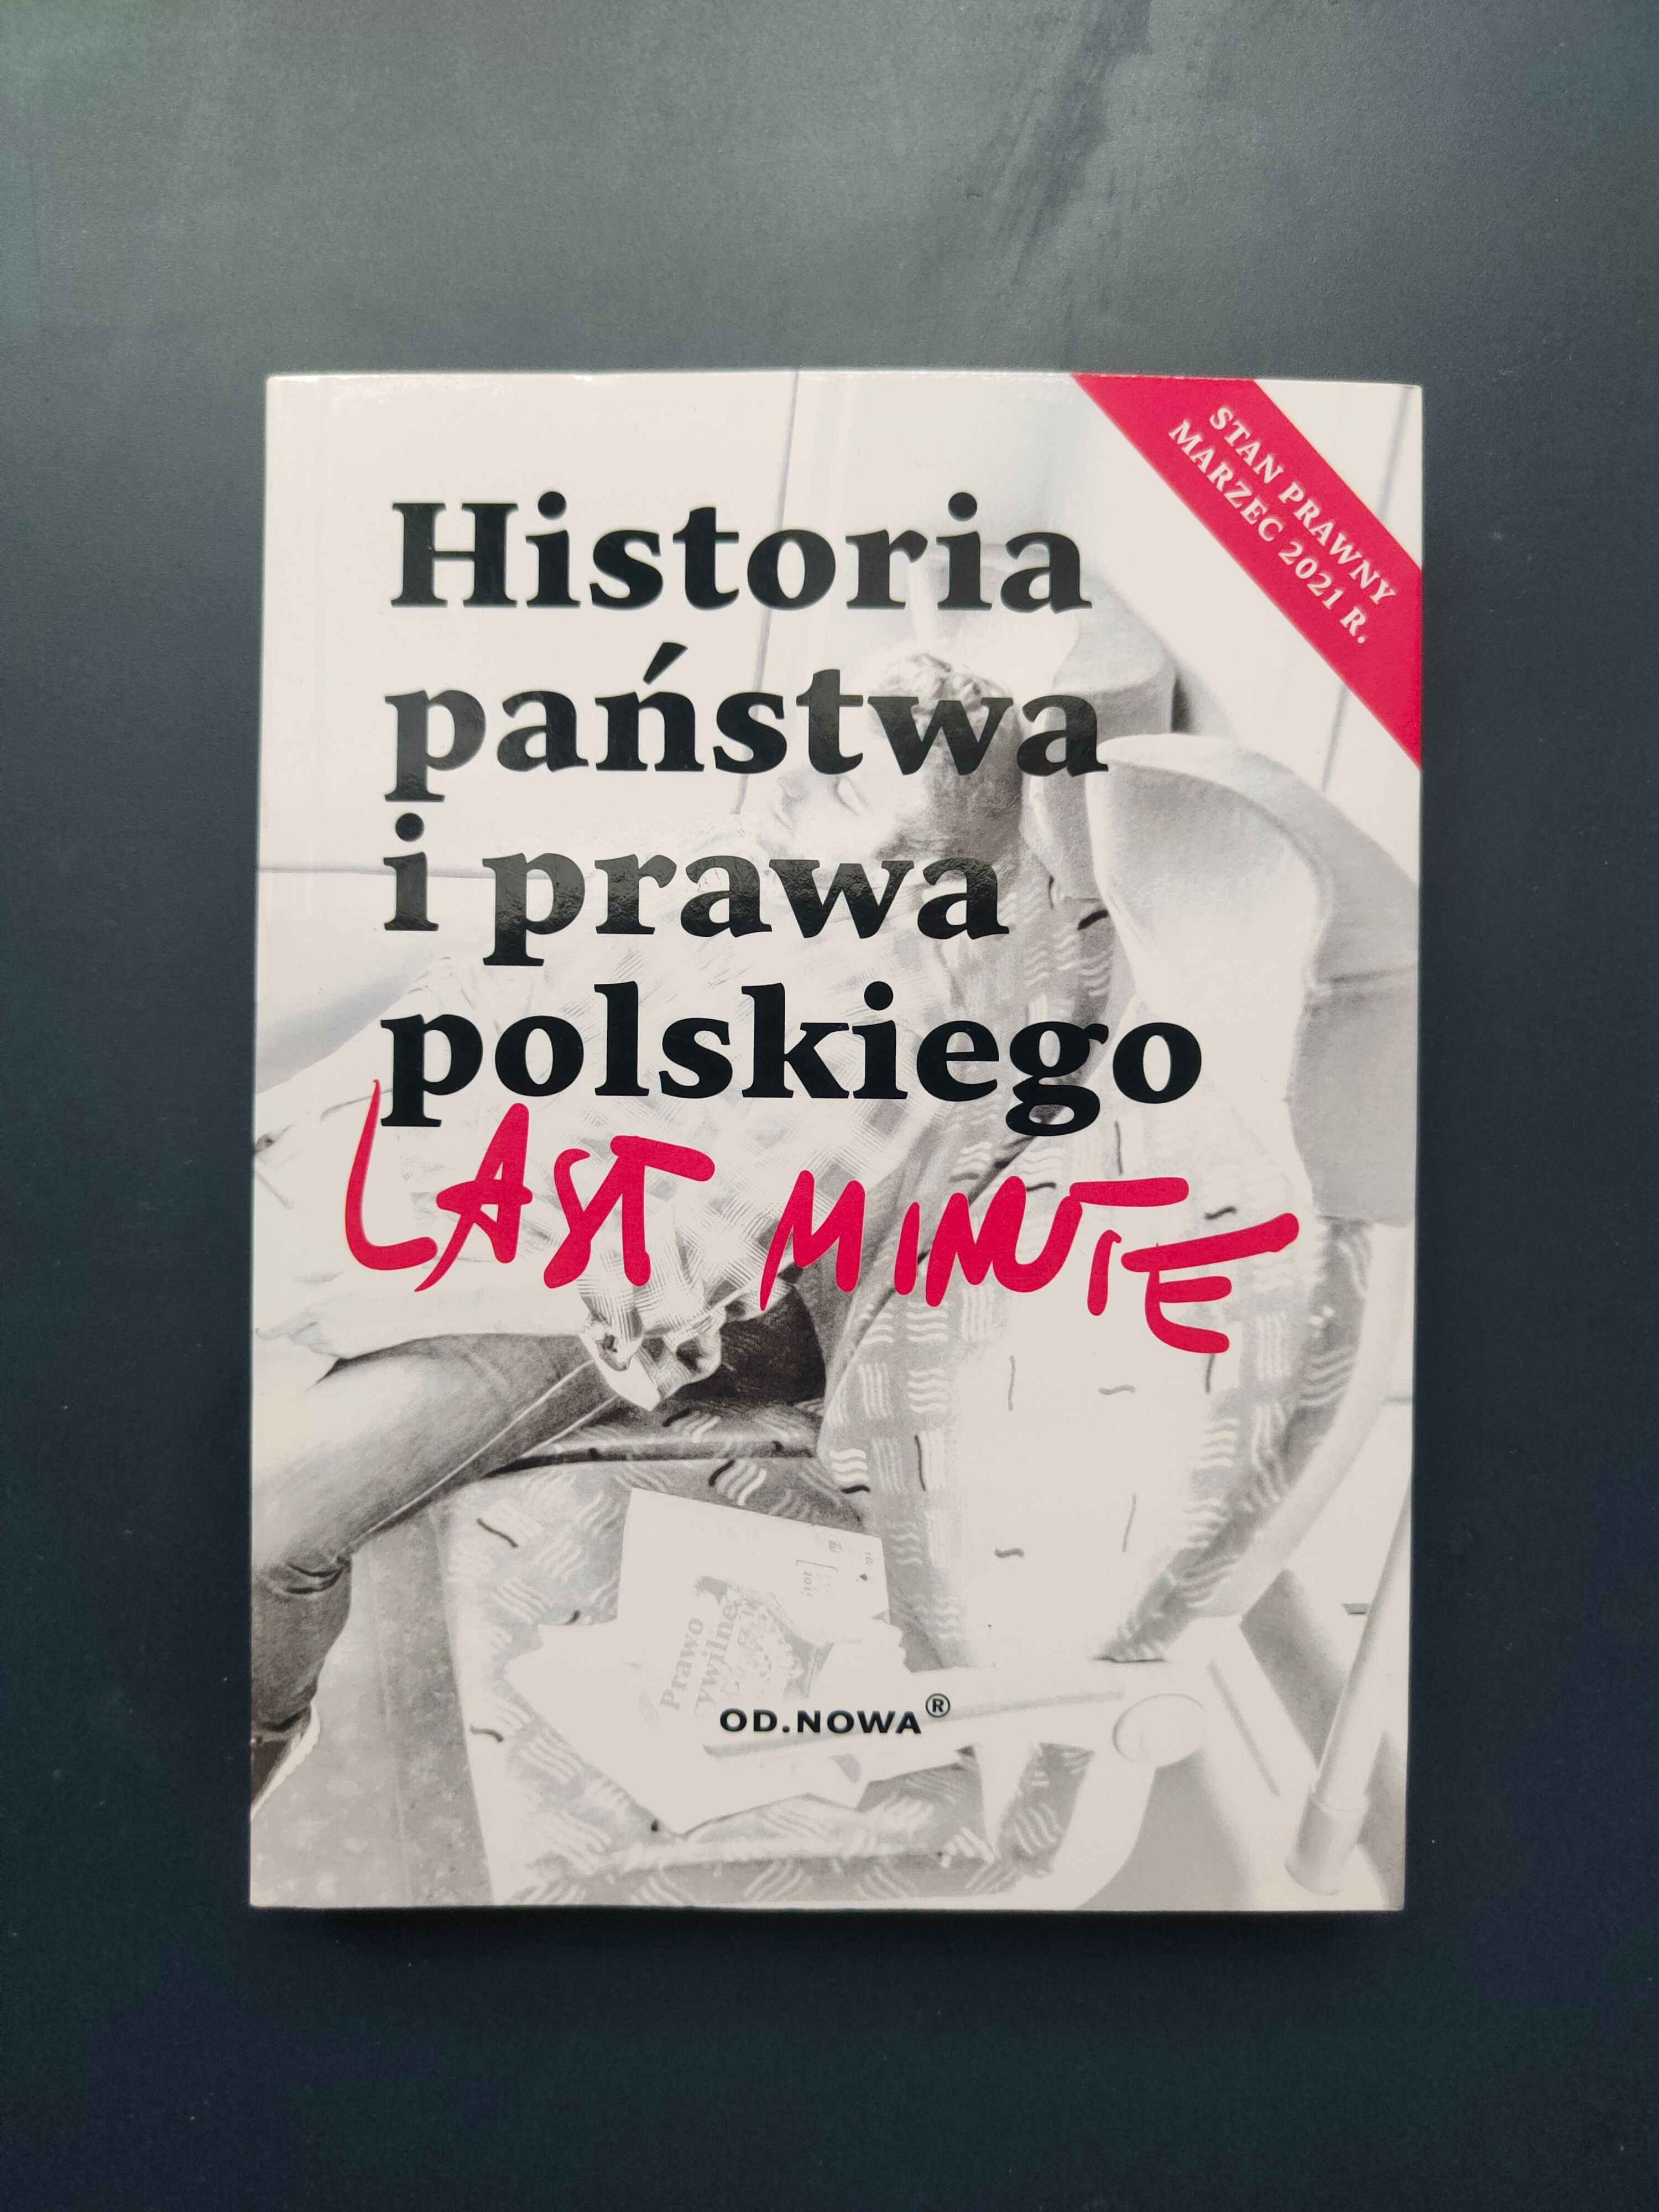 "Historia państwa i prawa polskiego last minute"